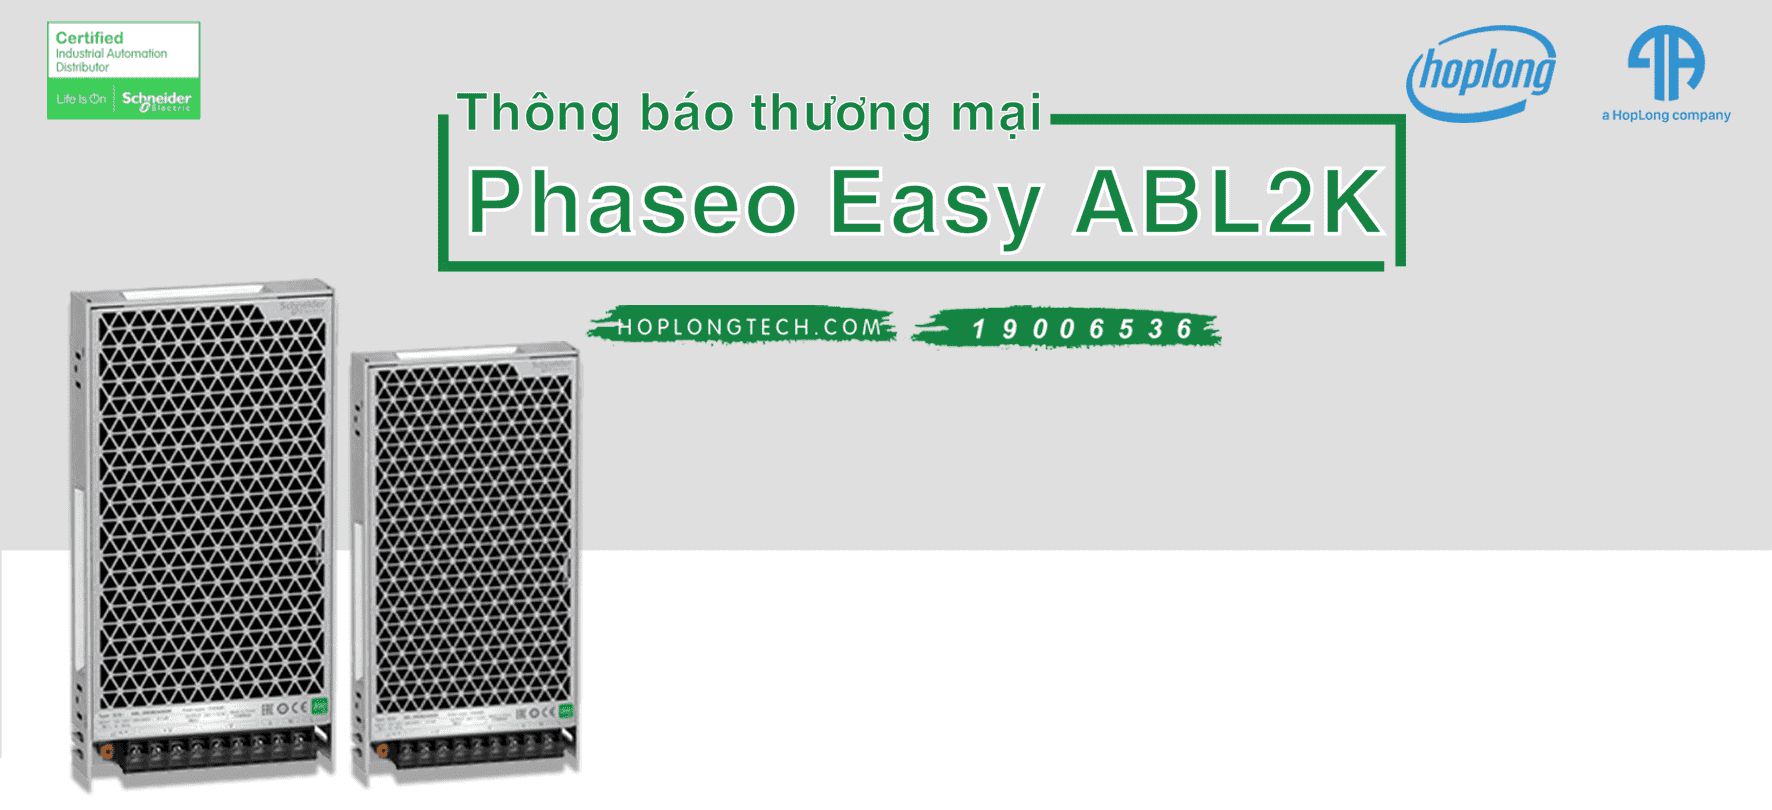 [Schneider] Thông báo thương mại Phaseo Easy ABL2K